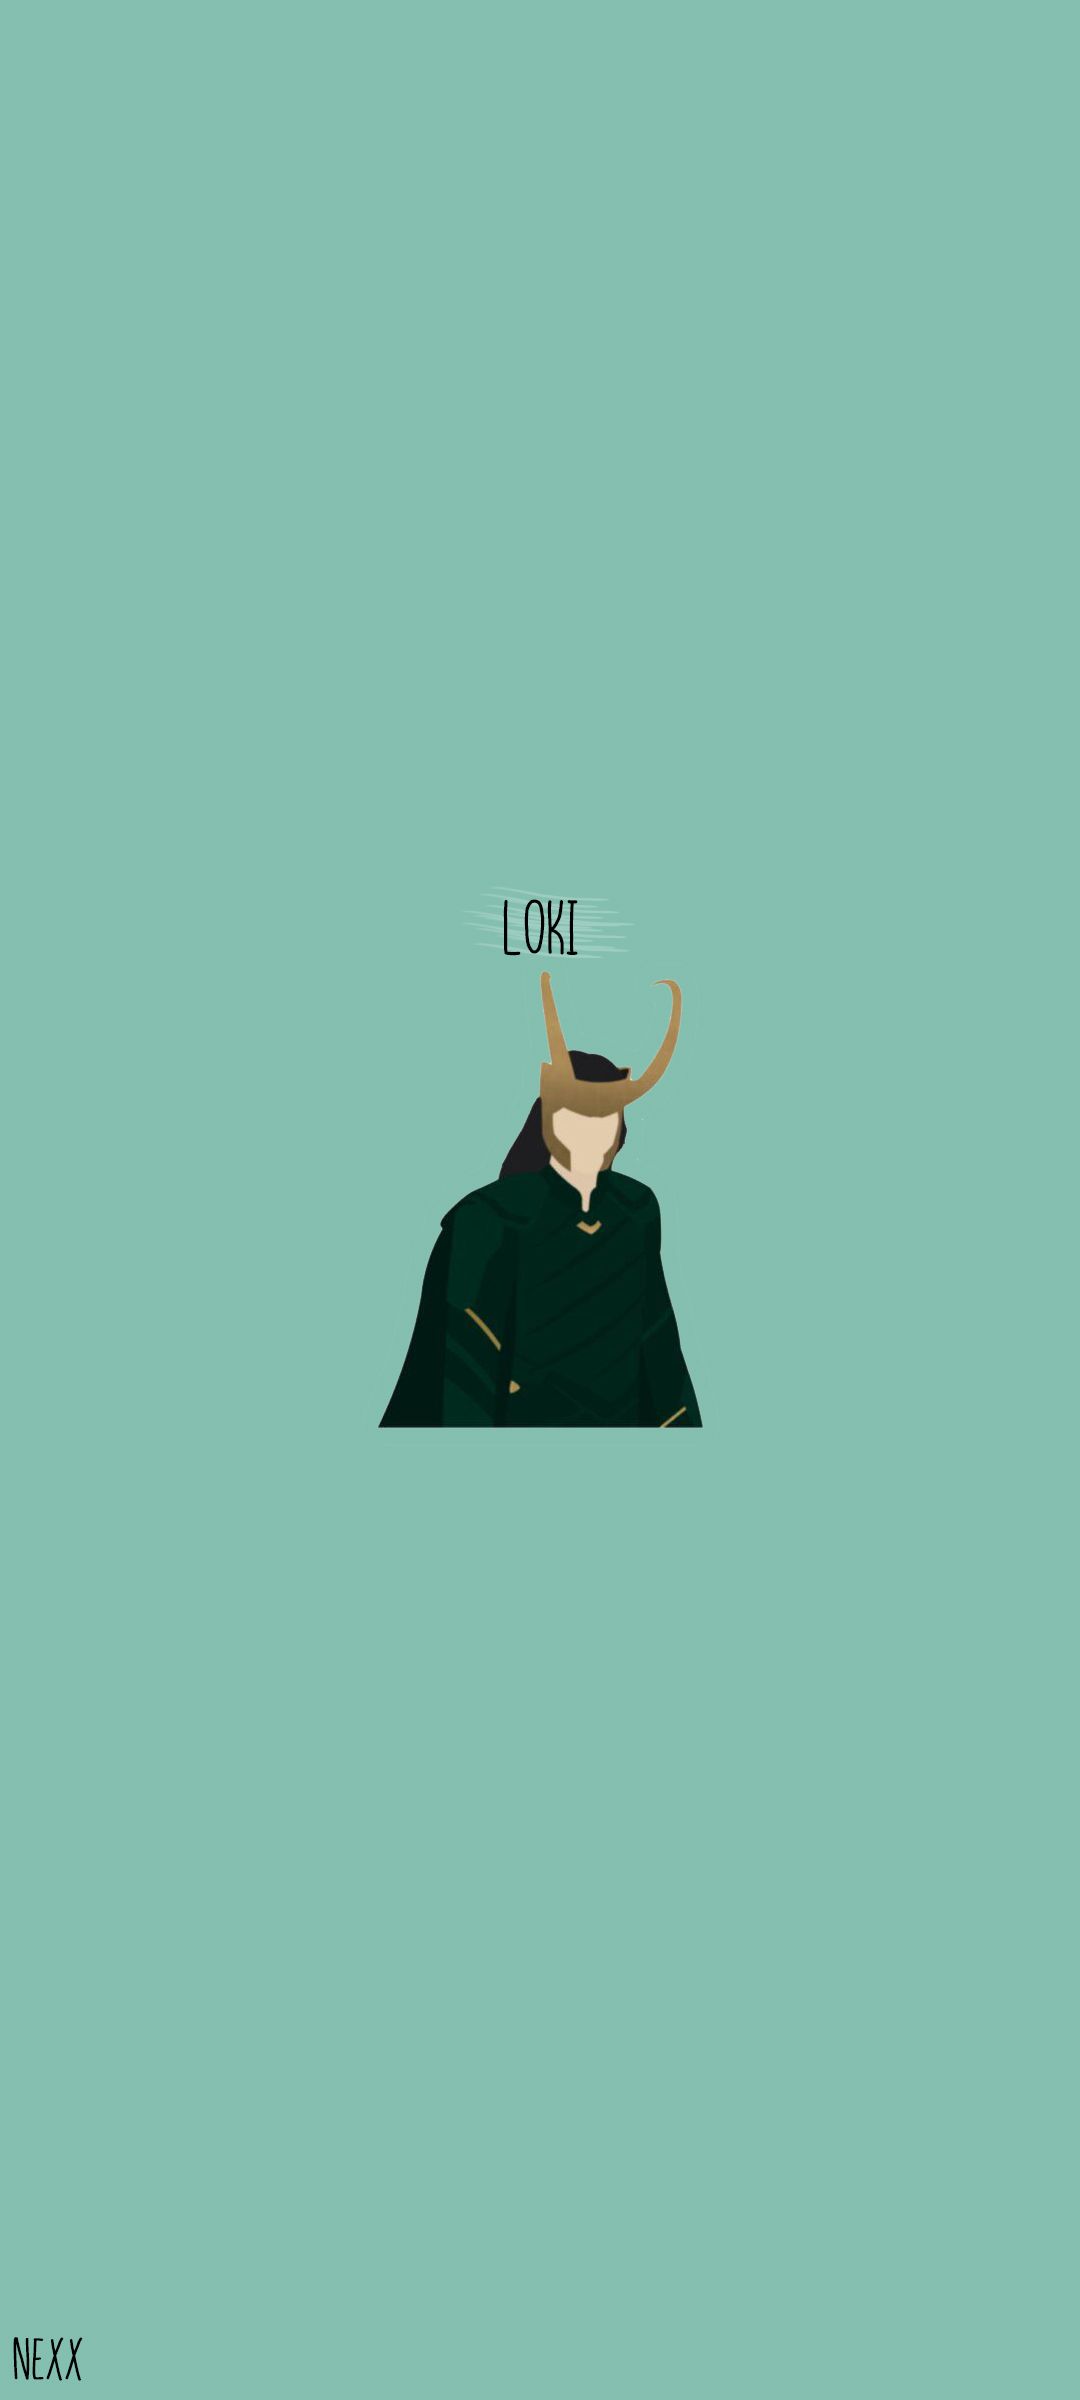 Loki Minimalist Wallpapers